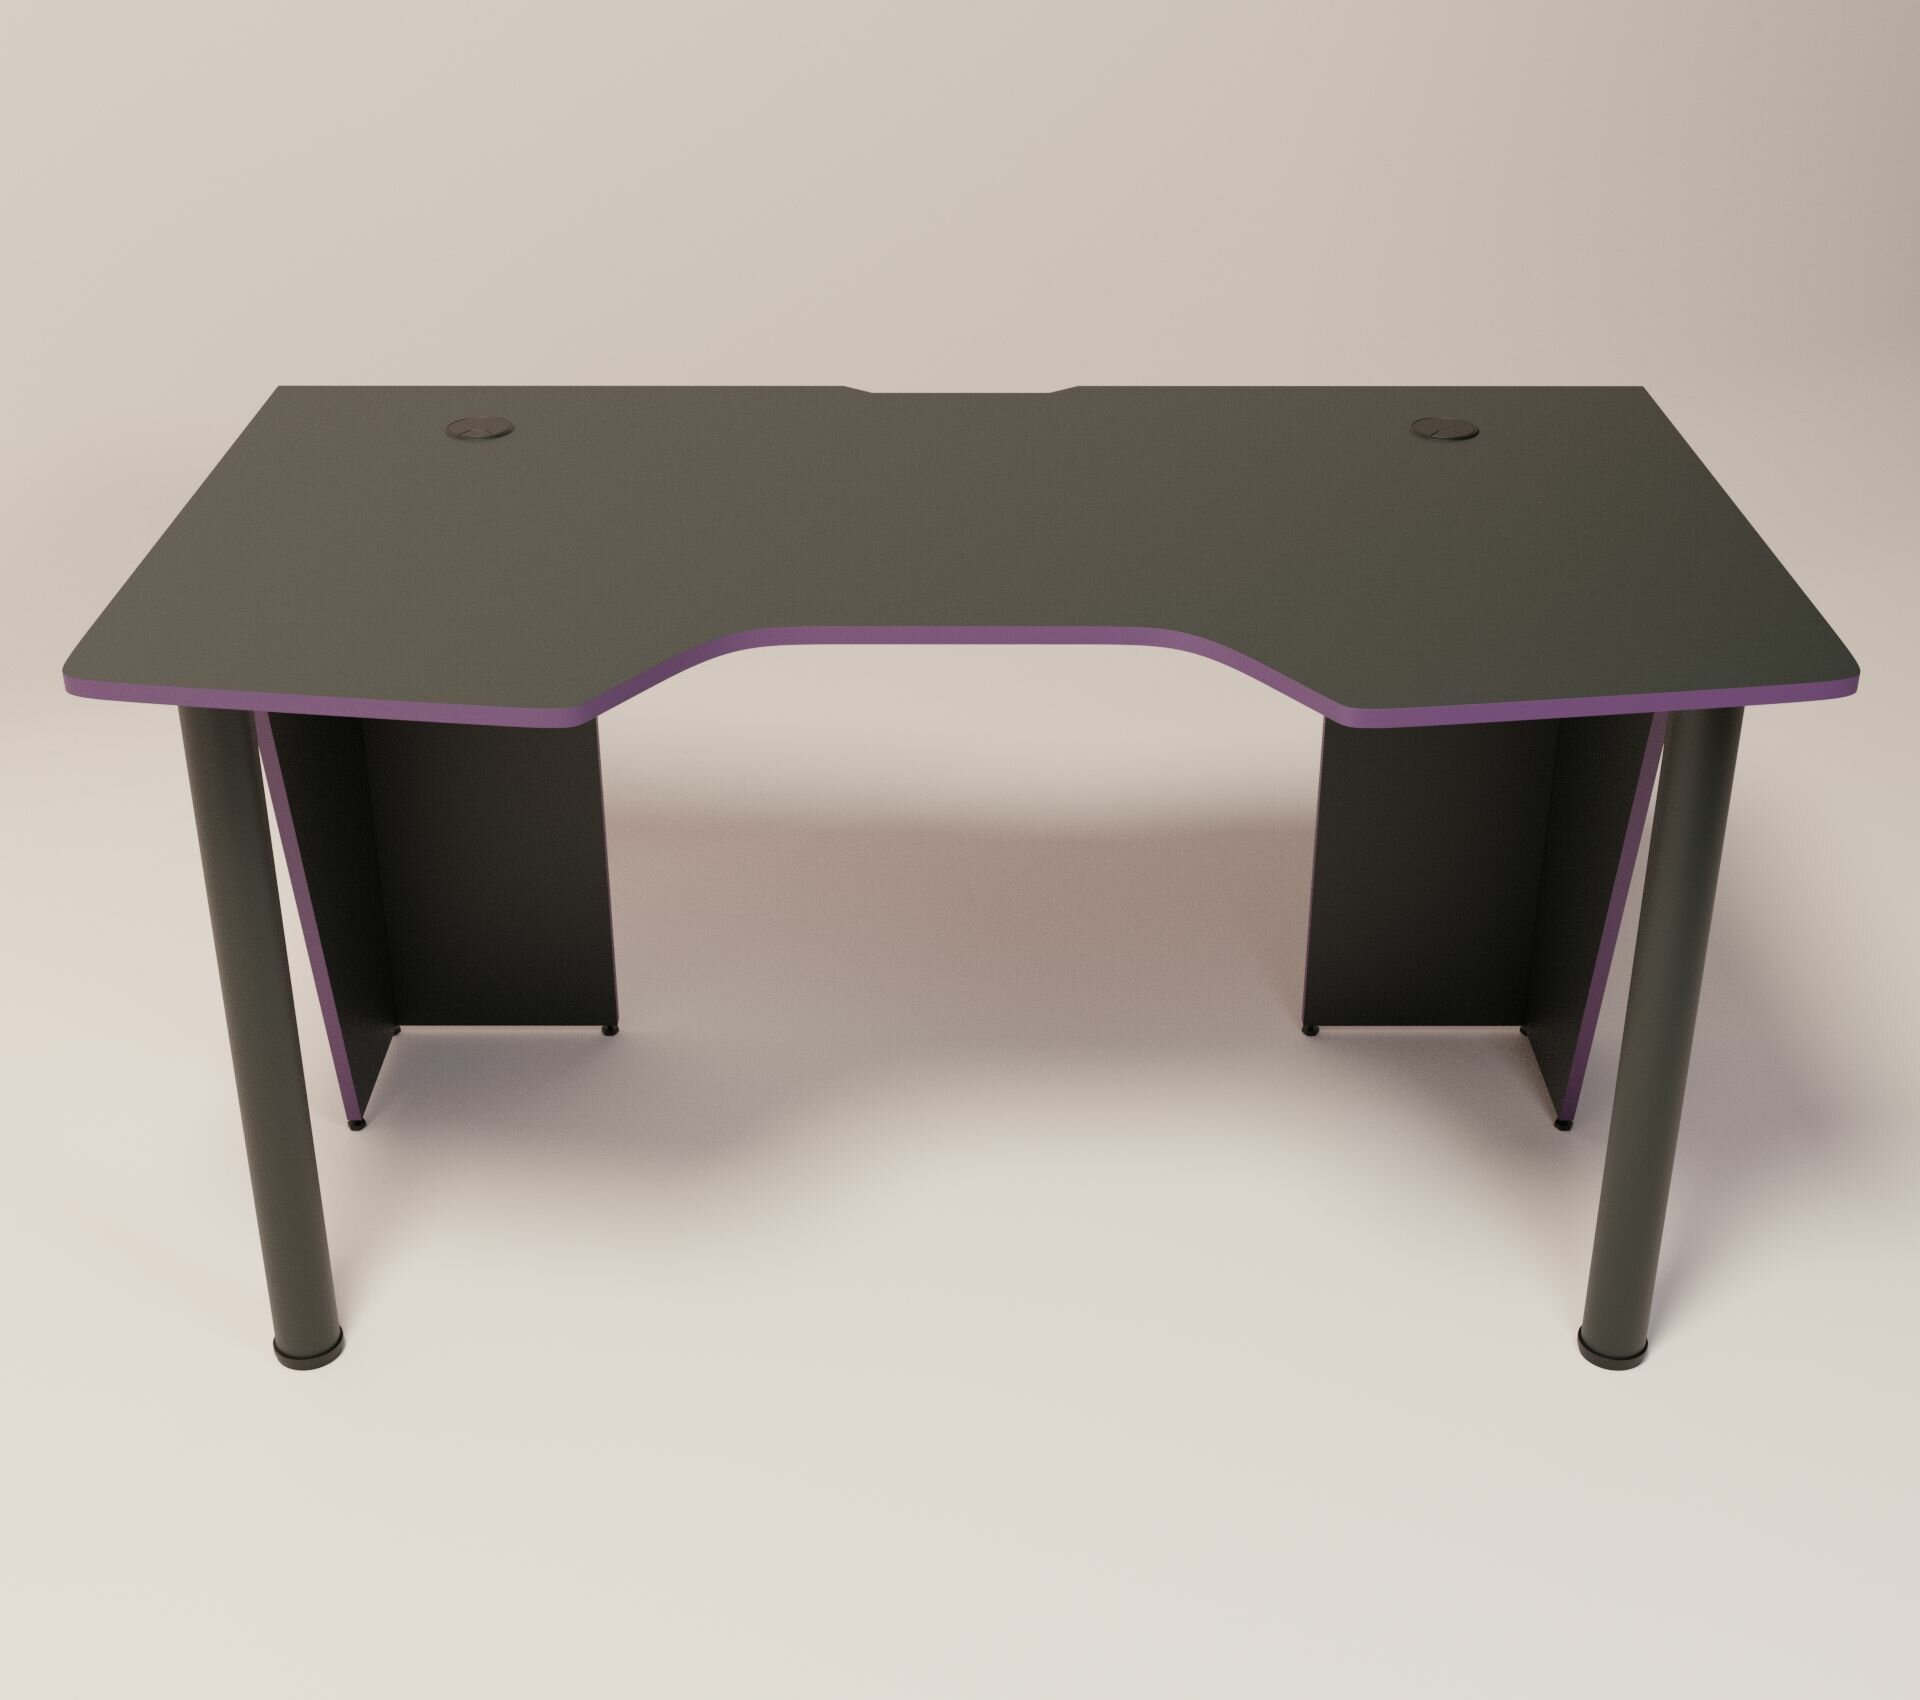 Игровой компьютерный стол FPS, 140 х 78 х 73, черно-фиолетовый, игровой стол